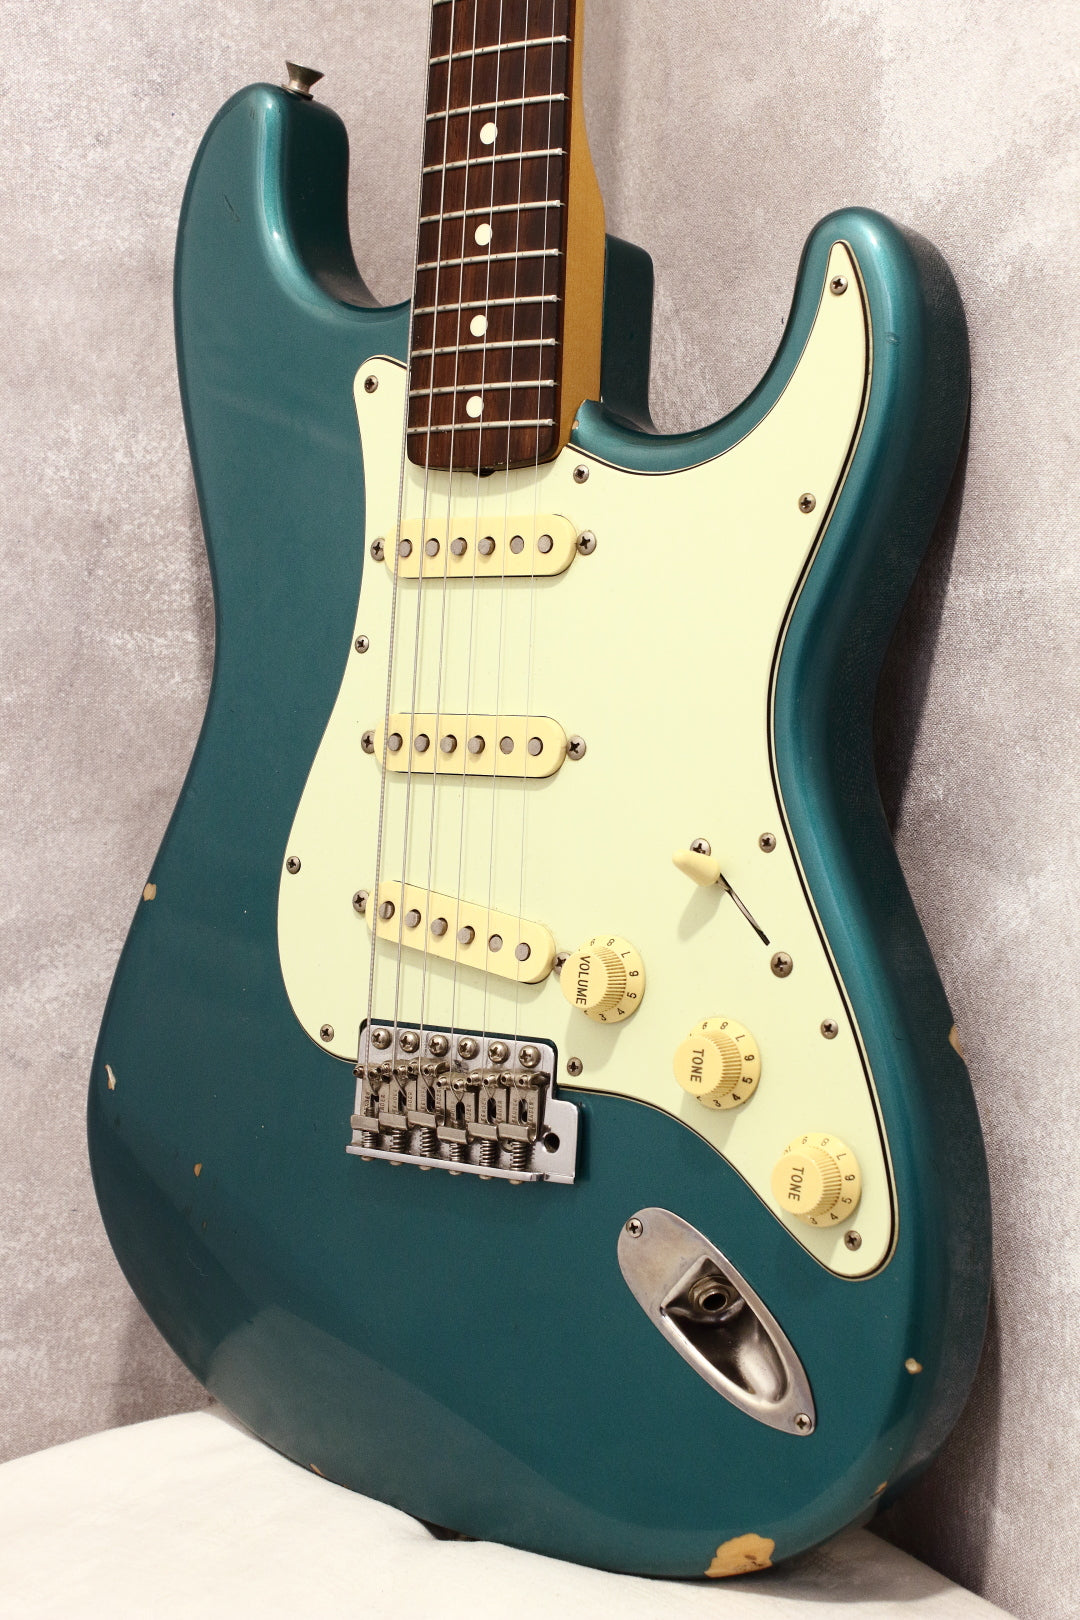 【消防士長】[GT]Fender Stratocaster ST62 ストラトキャスター BLK Lefty レフティー ストラトキャスター・スチューデントモデルとして生まれたモデル フェンダー